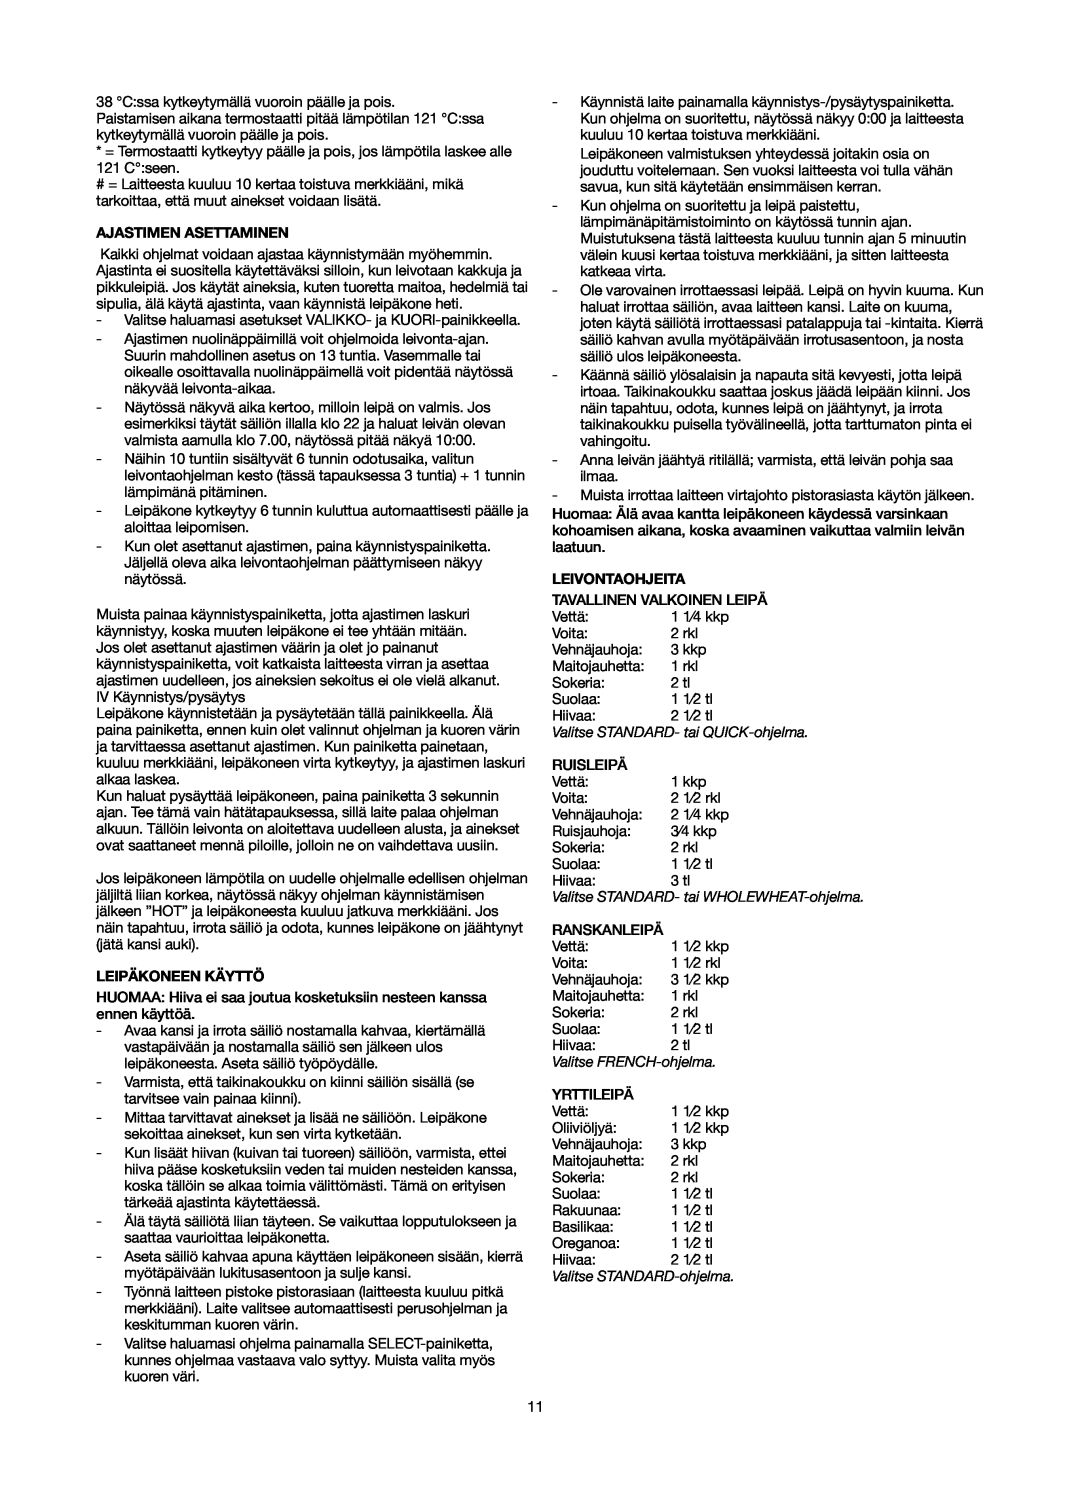 Melissa 743-066 manual Ajastimen Asettaminen, Leipäkoneen Käyttö, Leivontaohjeita, Valitse STANDARD- tai QUICK-ohjelma 